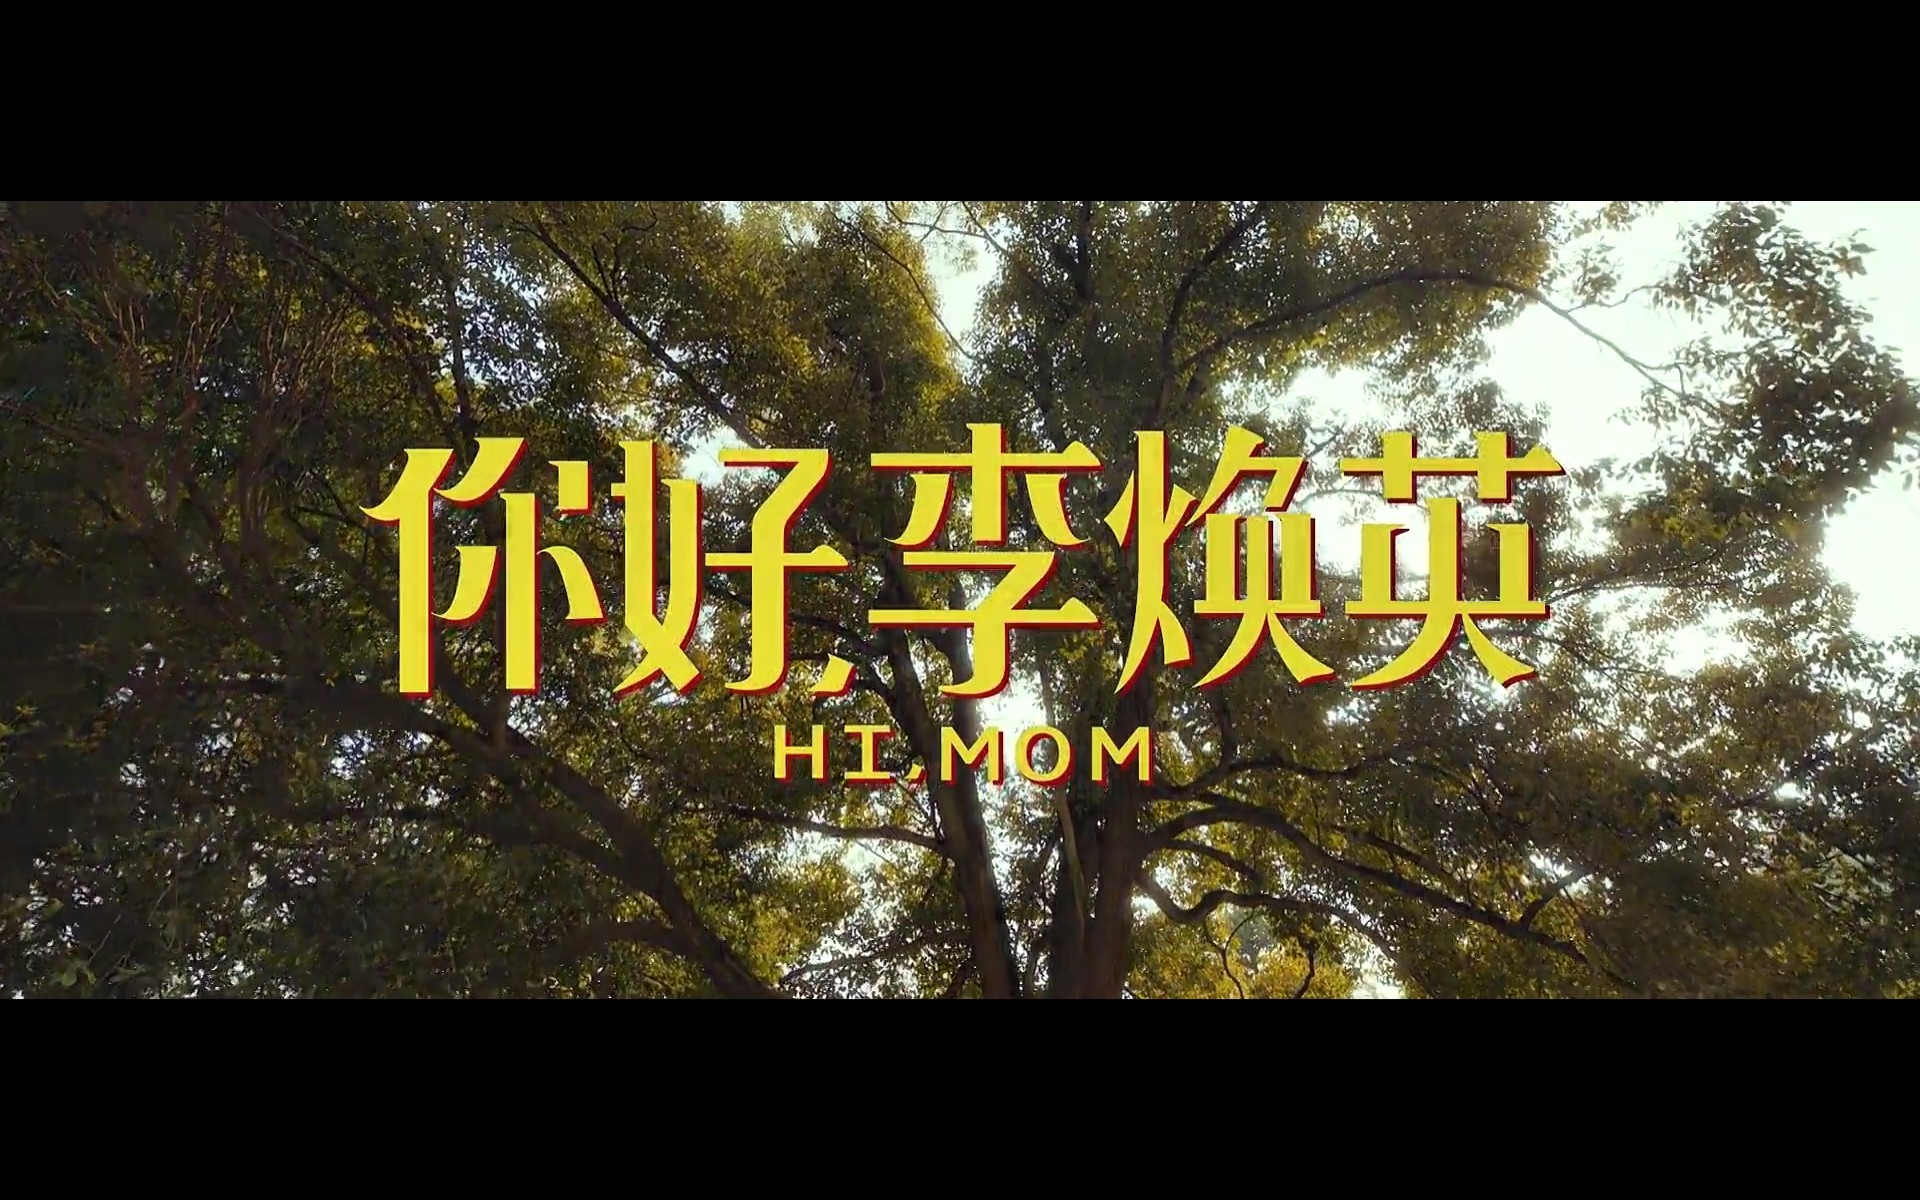 《关于我妈的一切》9.19中秋档上映 徐帆张婧仪演绎“中式母女”